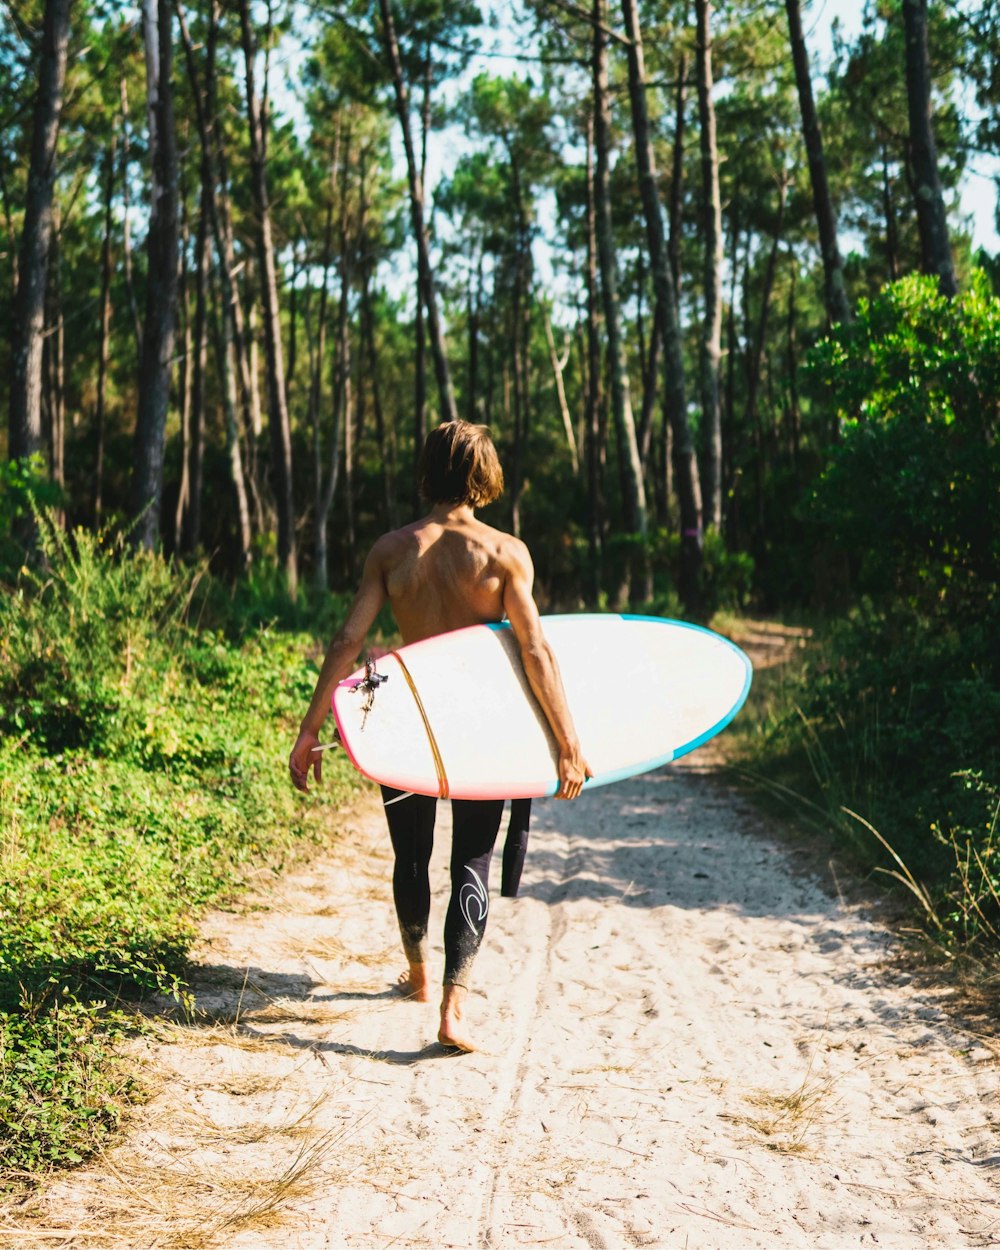 femme en bikini noir et blanc tenant une planche de surf blanche marchant sur un chemin de terre pendant la journée